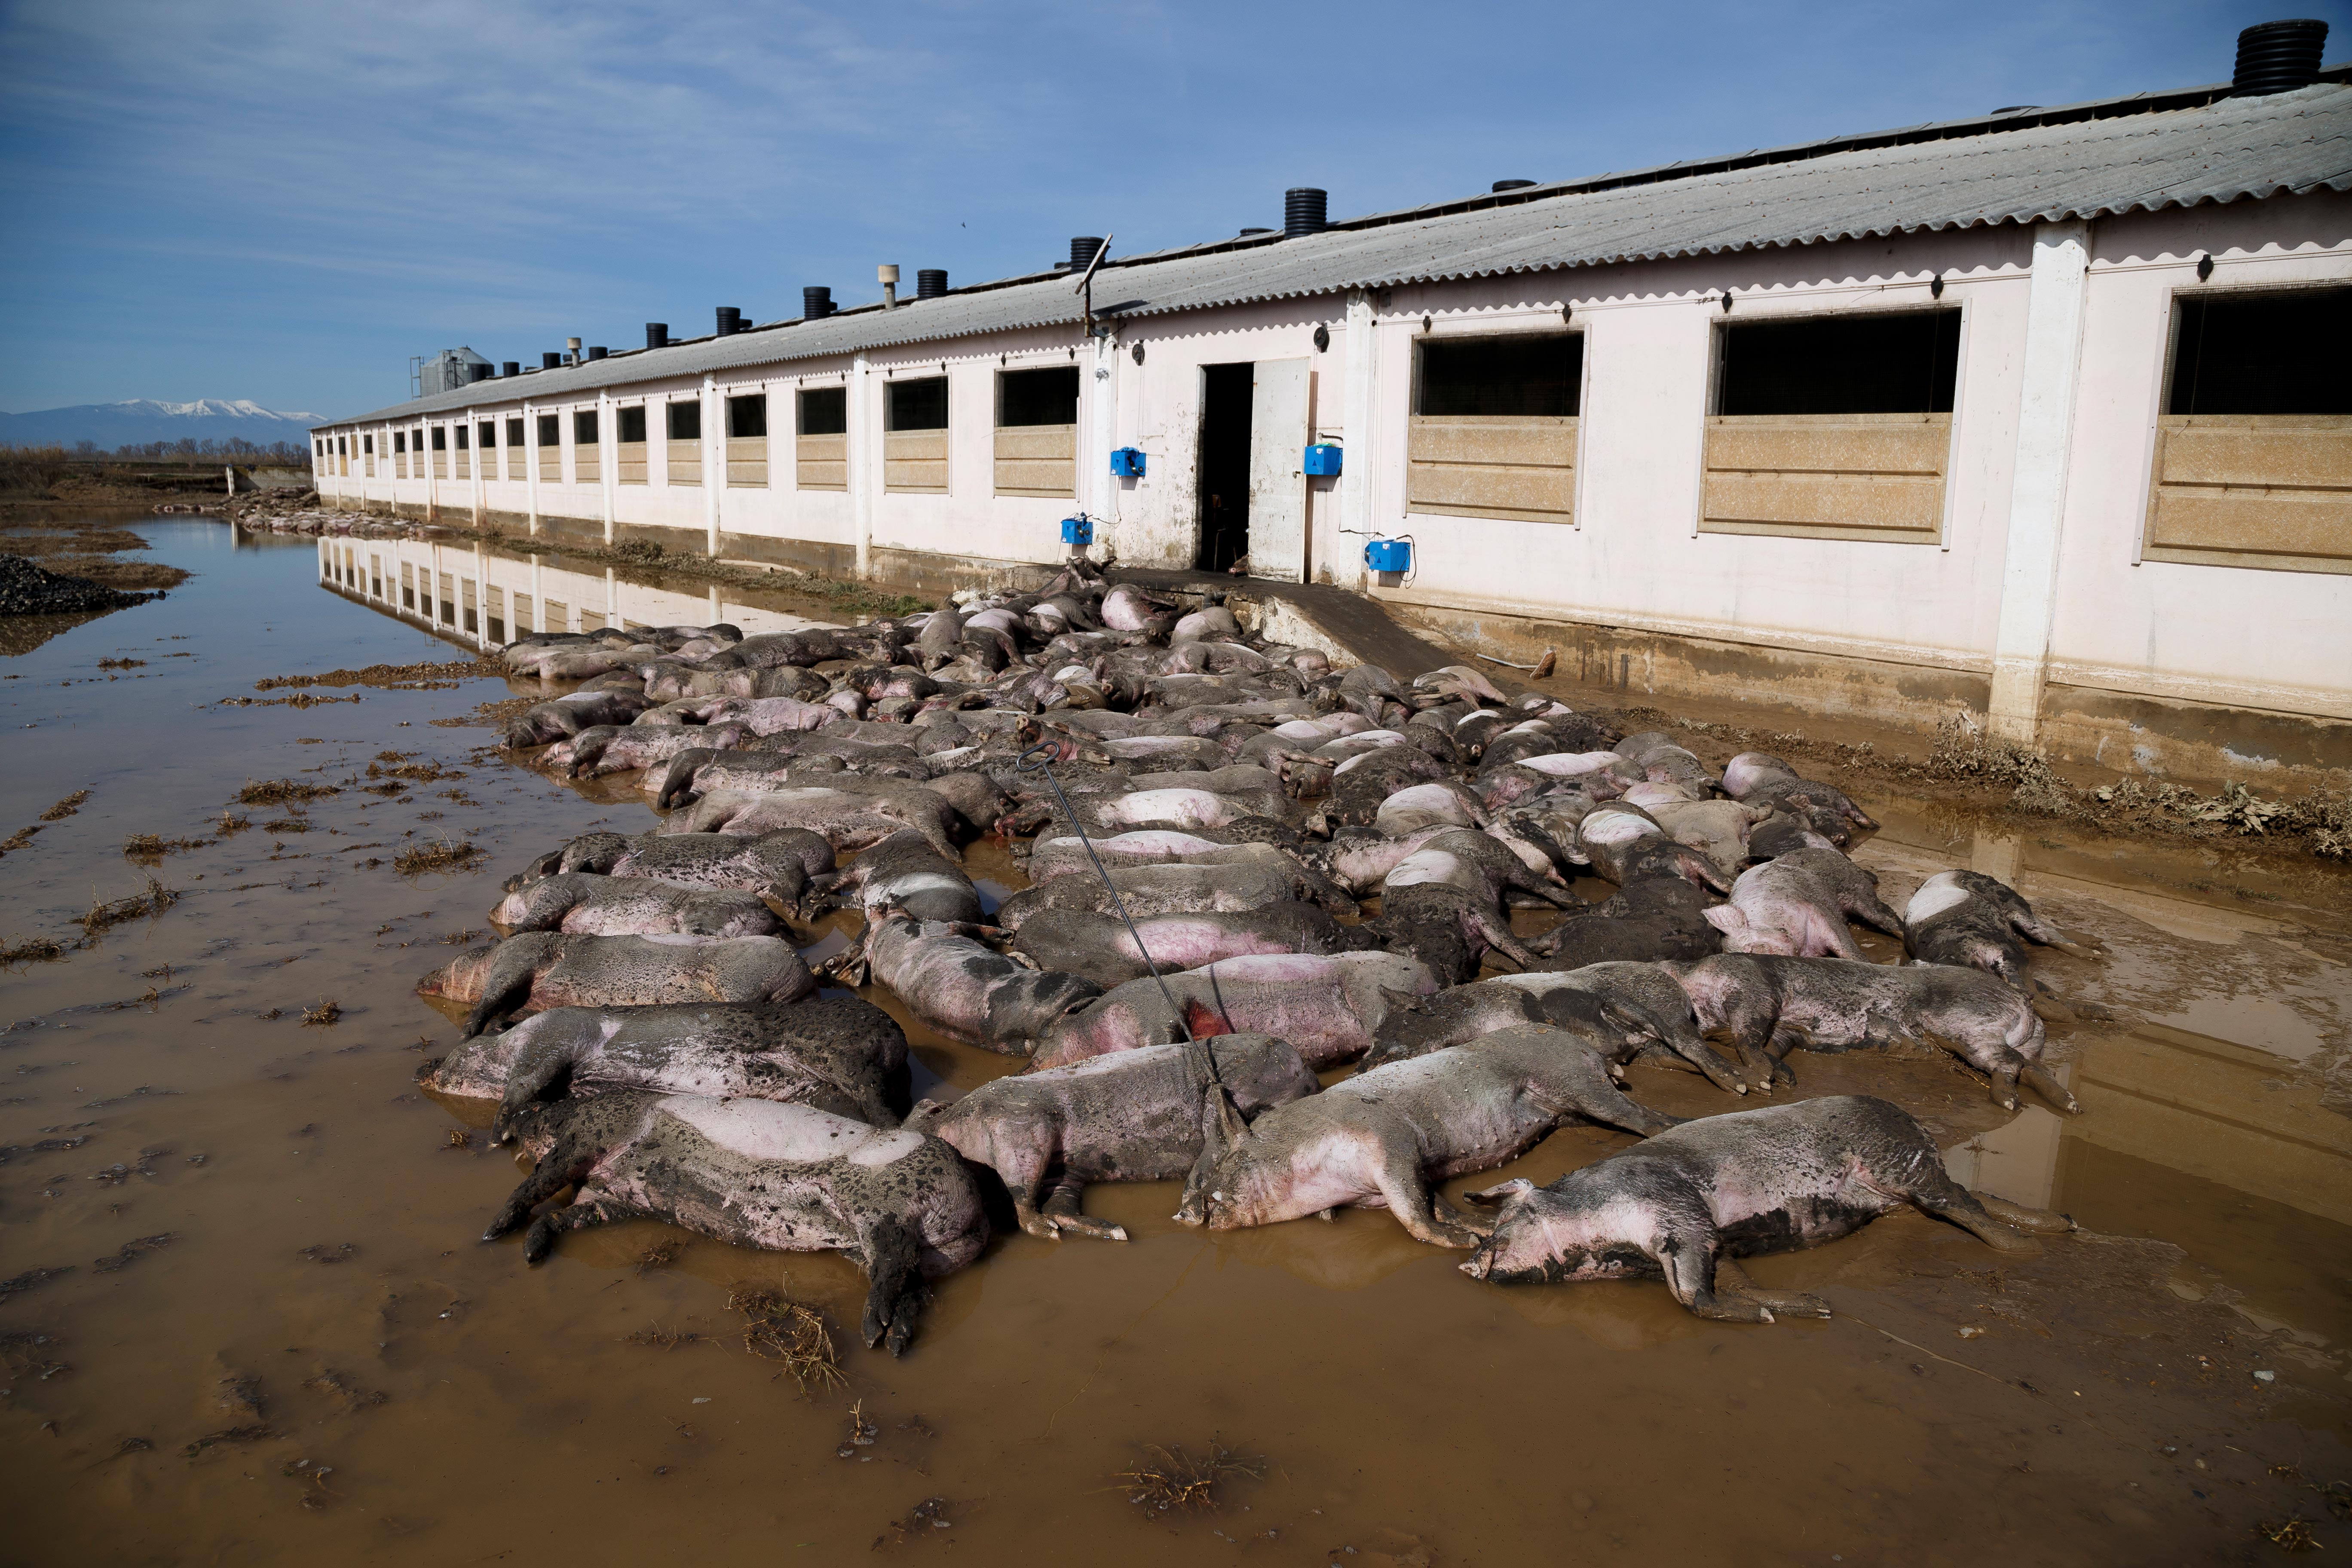 Cadáveres de cerdos apilados fuera de una granja inundaciones río Ebro